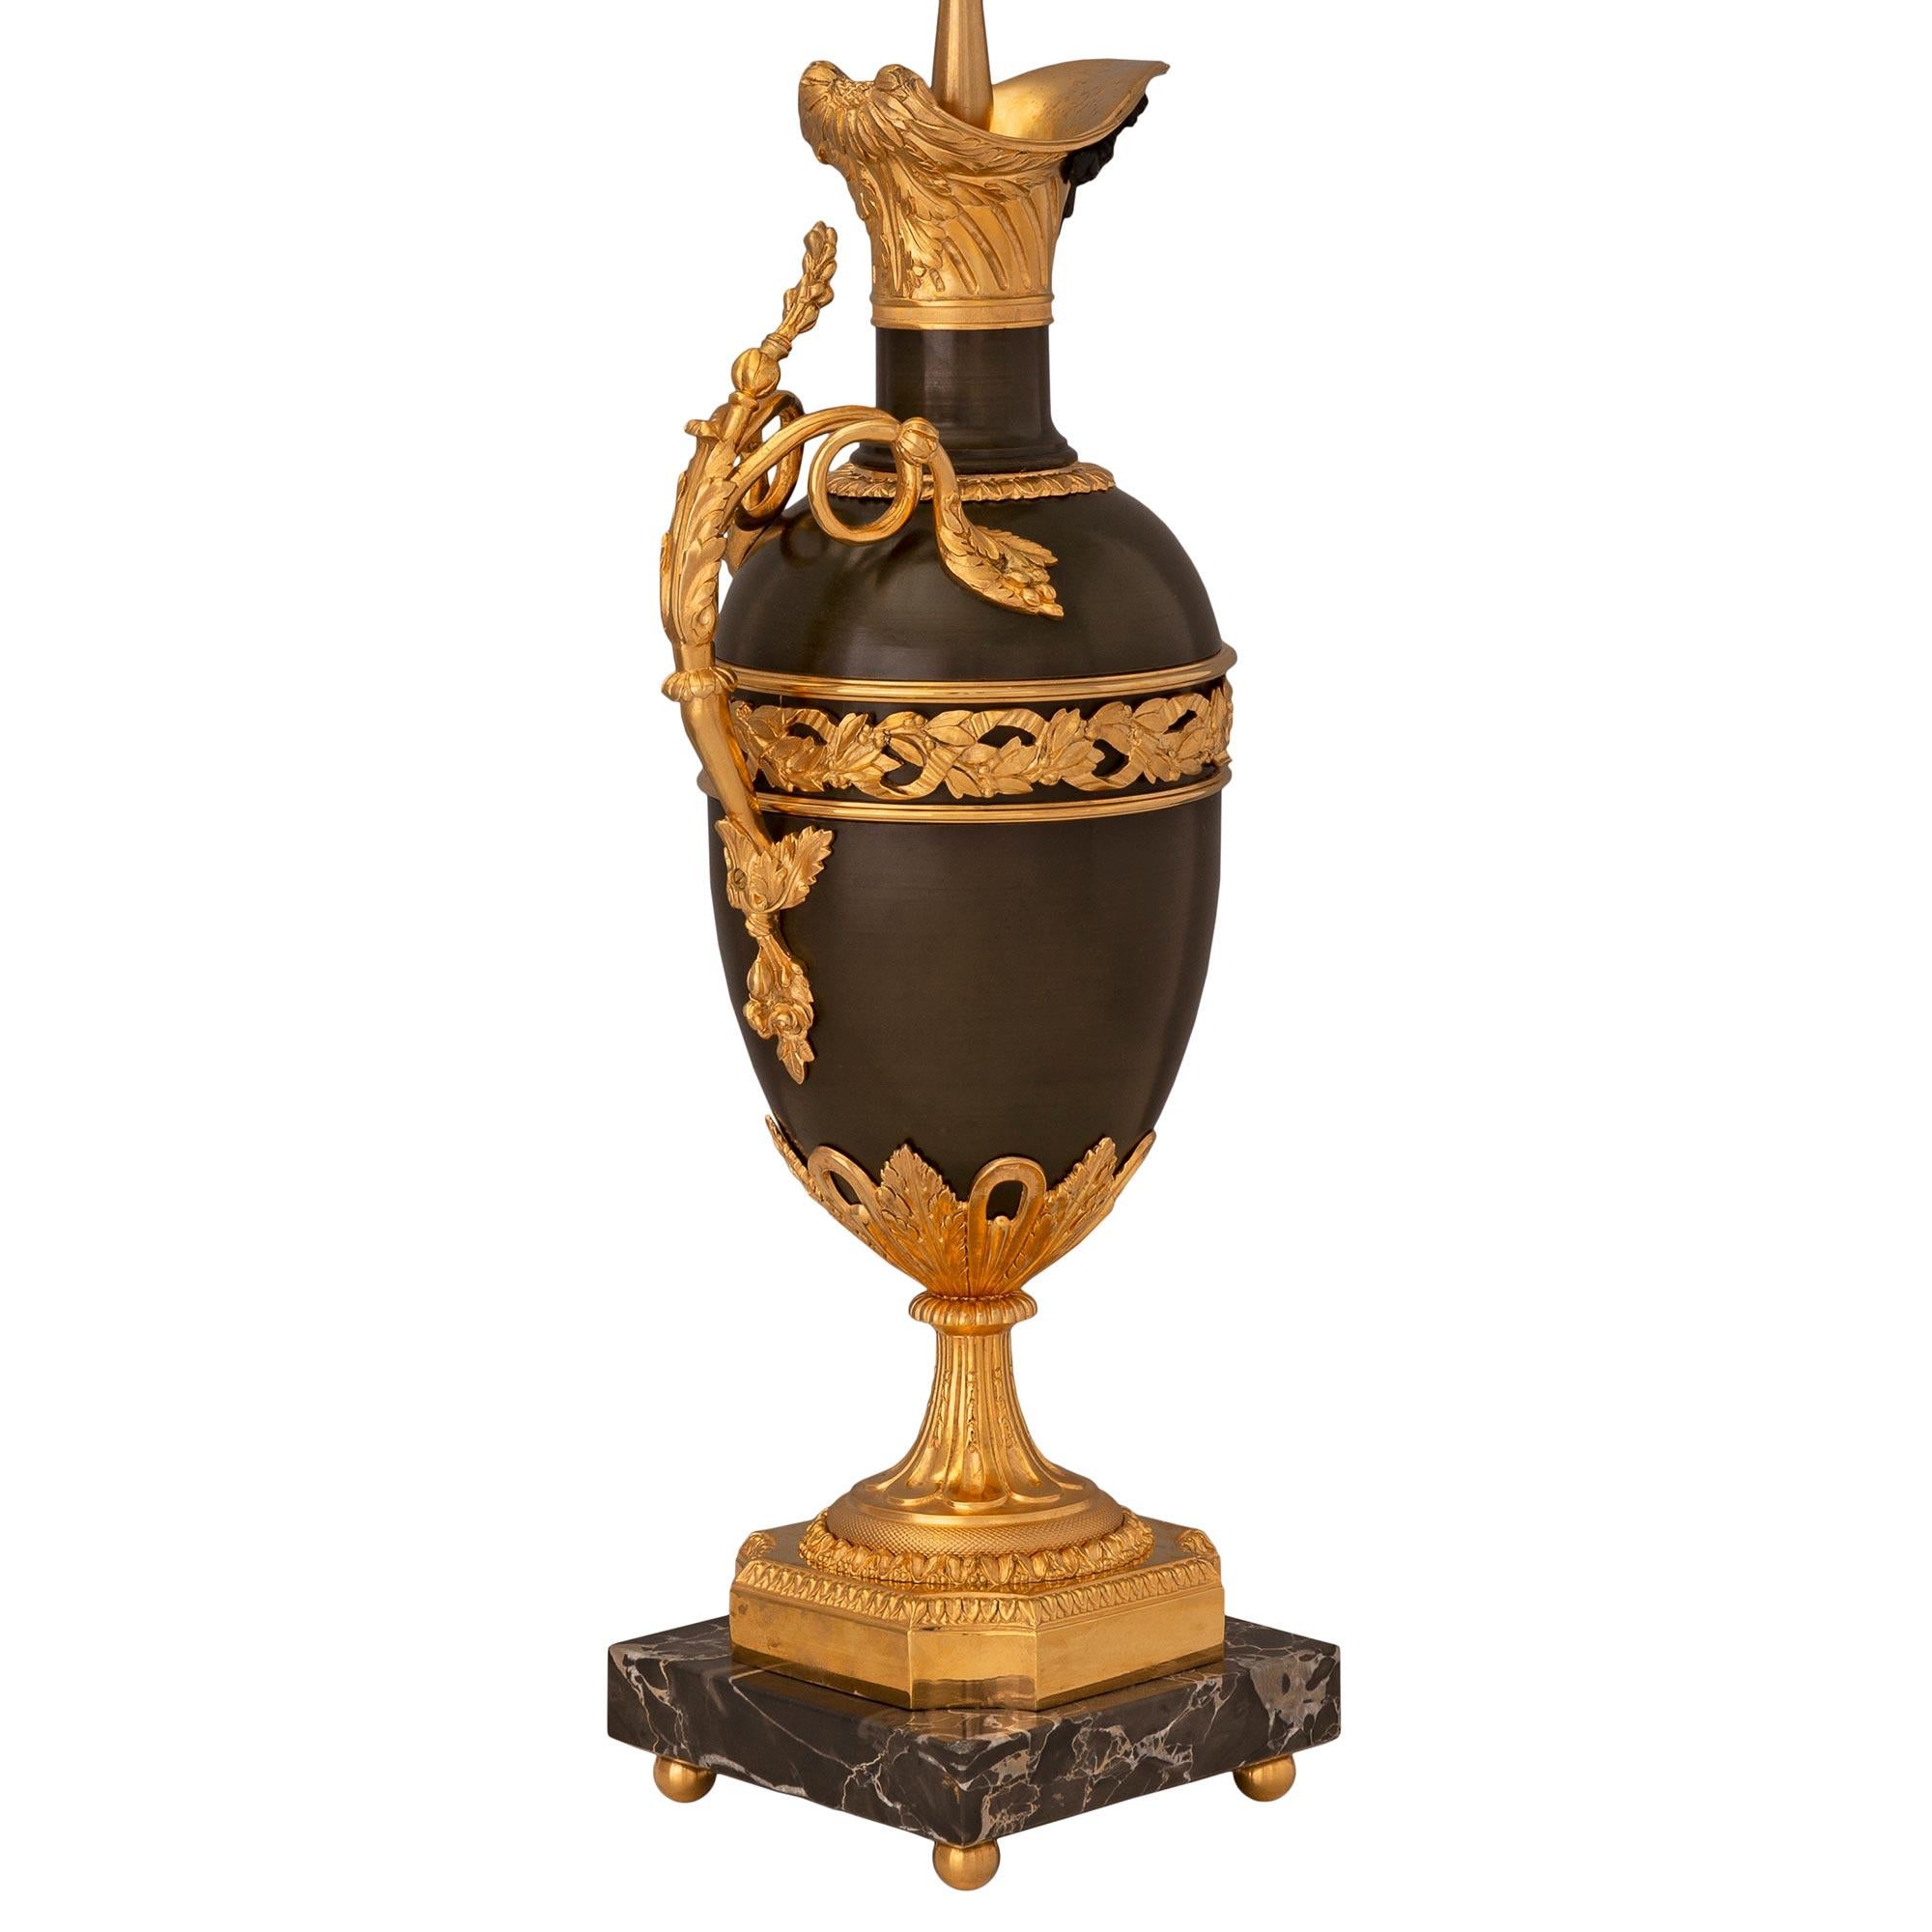 Paire de lampes en bronze patiné, bronze doré et marbre Portoro du XIXe siècle de style Louis XVI, d'une grande élégance et d'une grande qualité. Chaque lampe est surélevée par de fins pieds boules en bronze doré sous les bases carrées en marbre